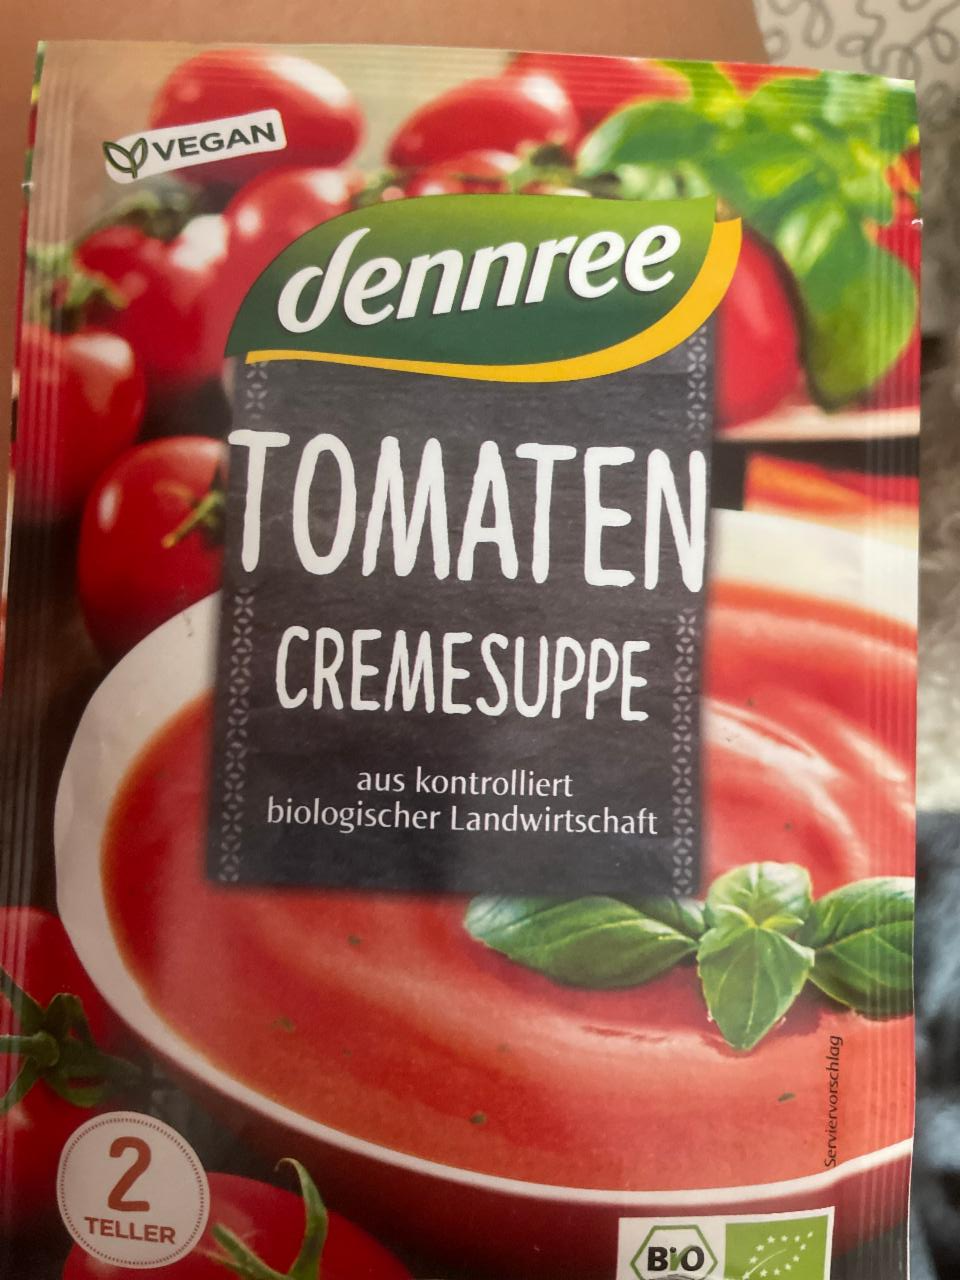 Fotografie - tomaten cremesuppe Dennree